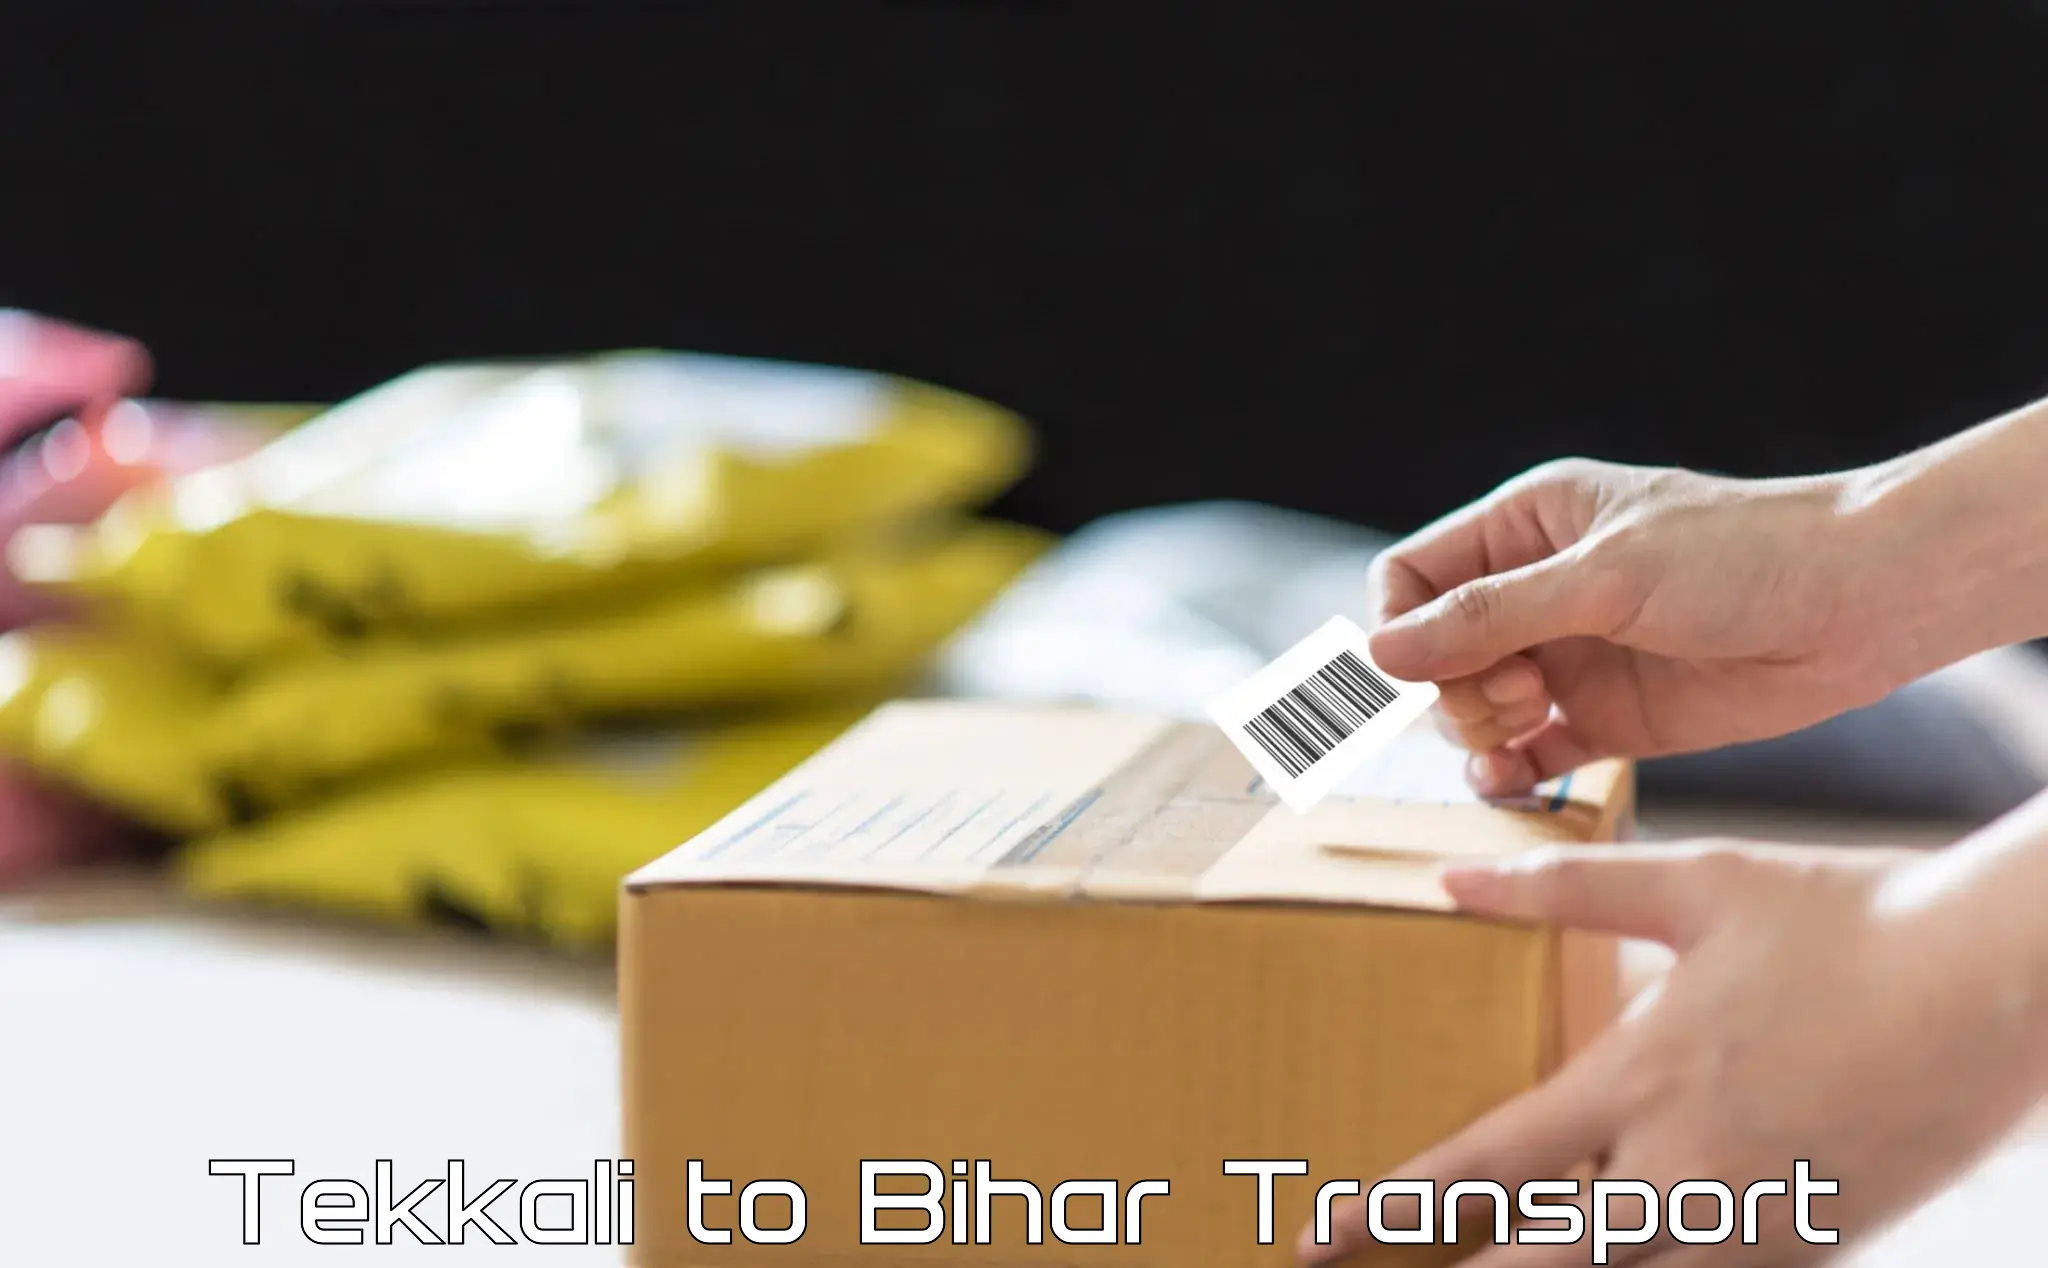 Nearby transport service Tekkali to Bihar